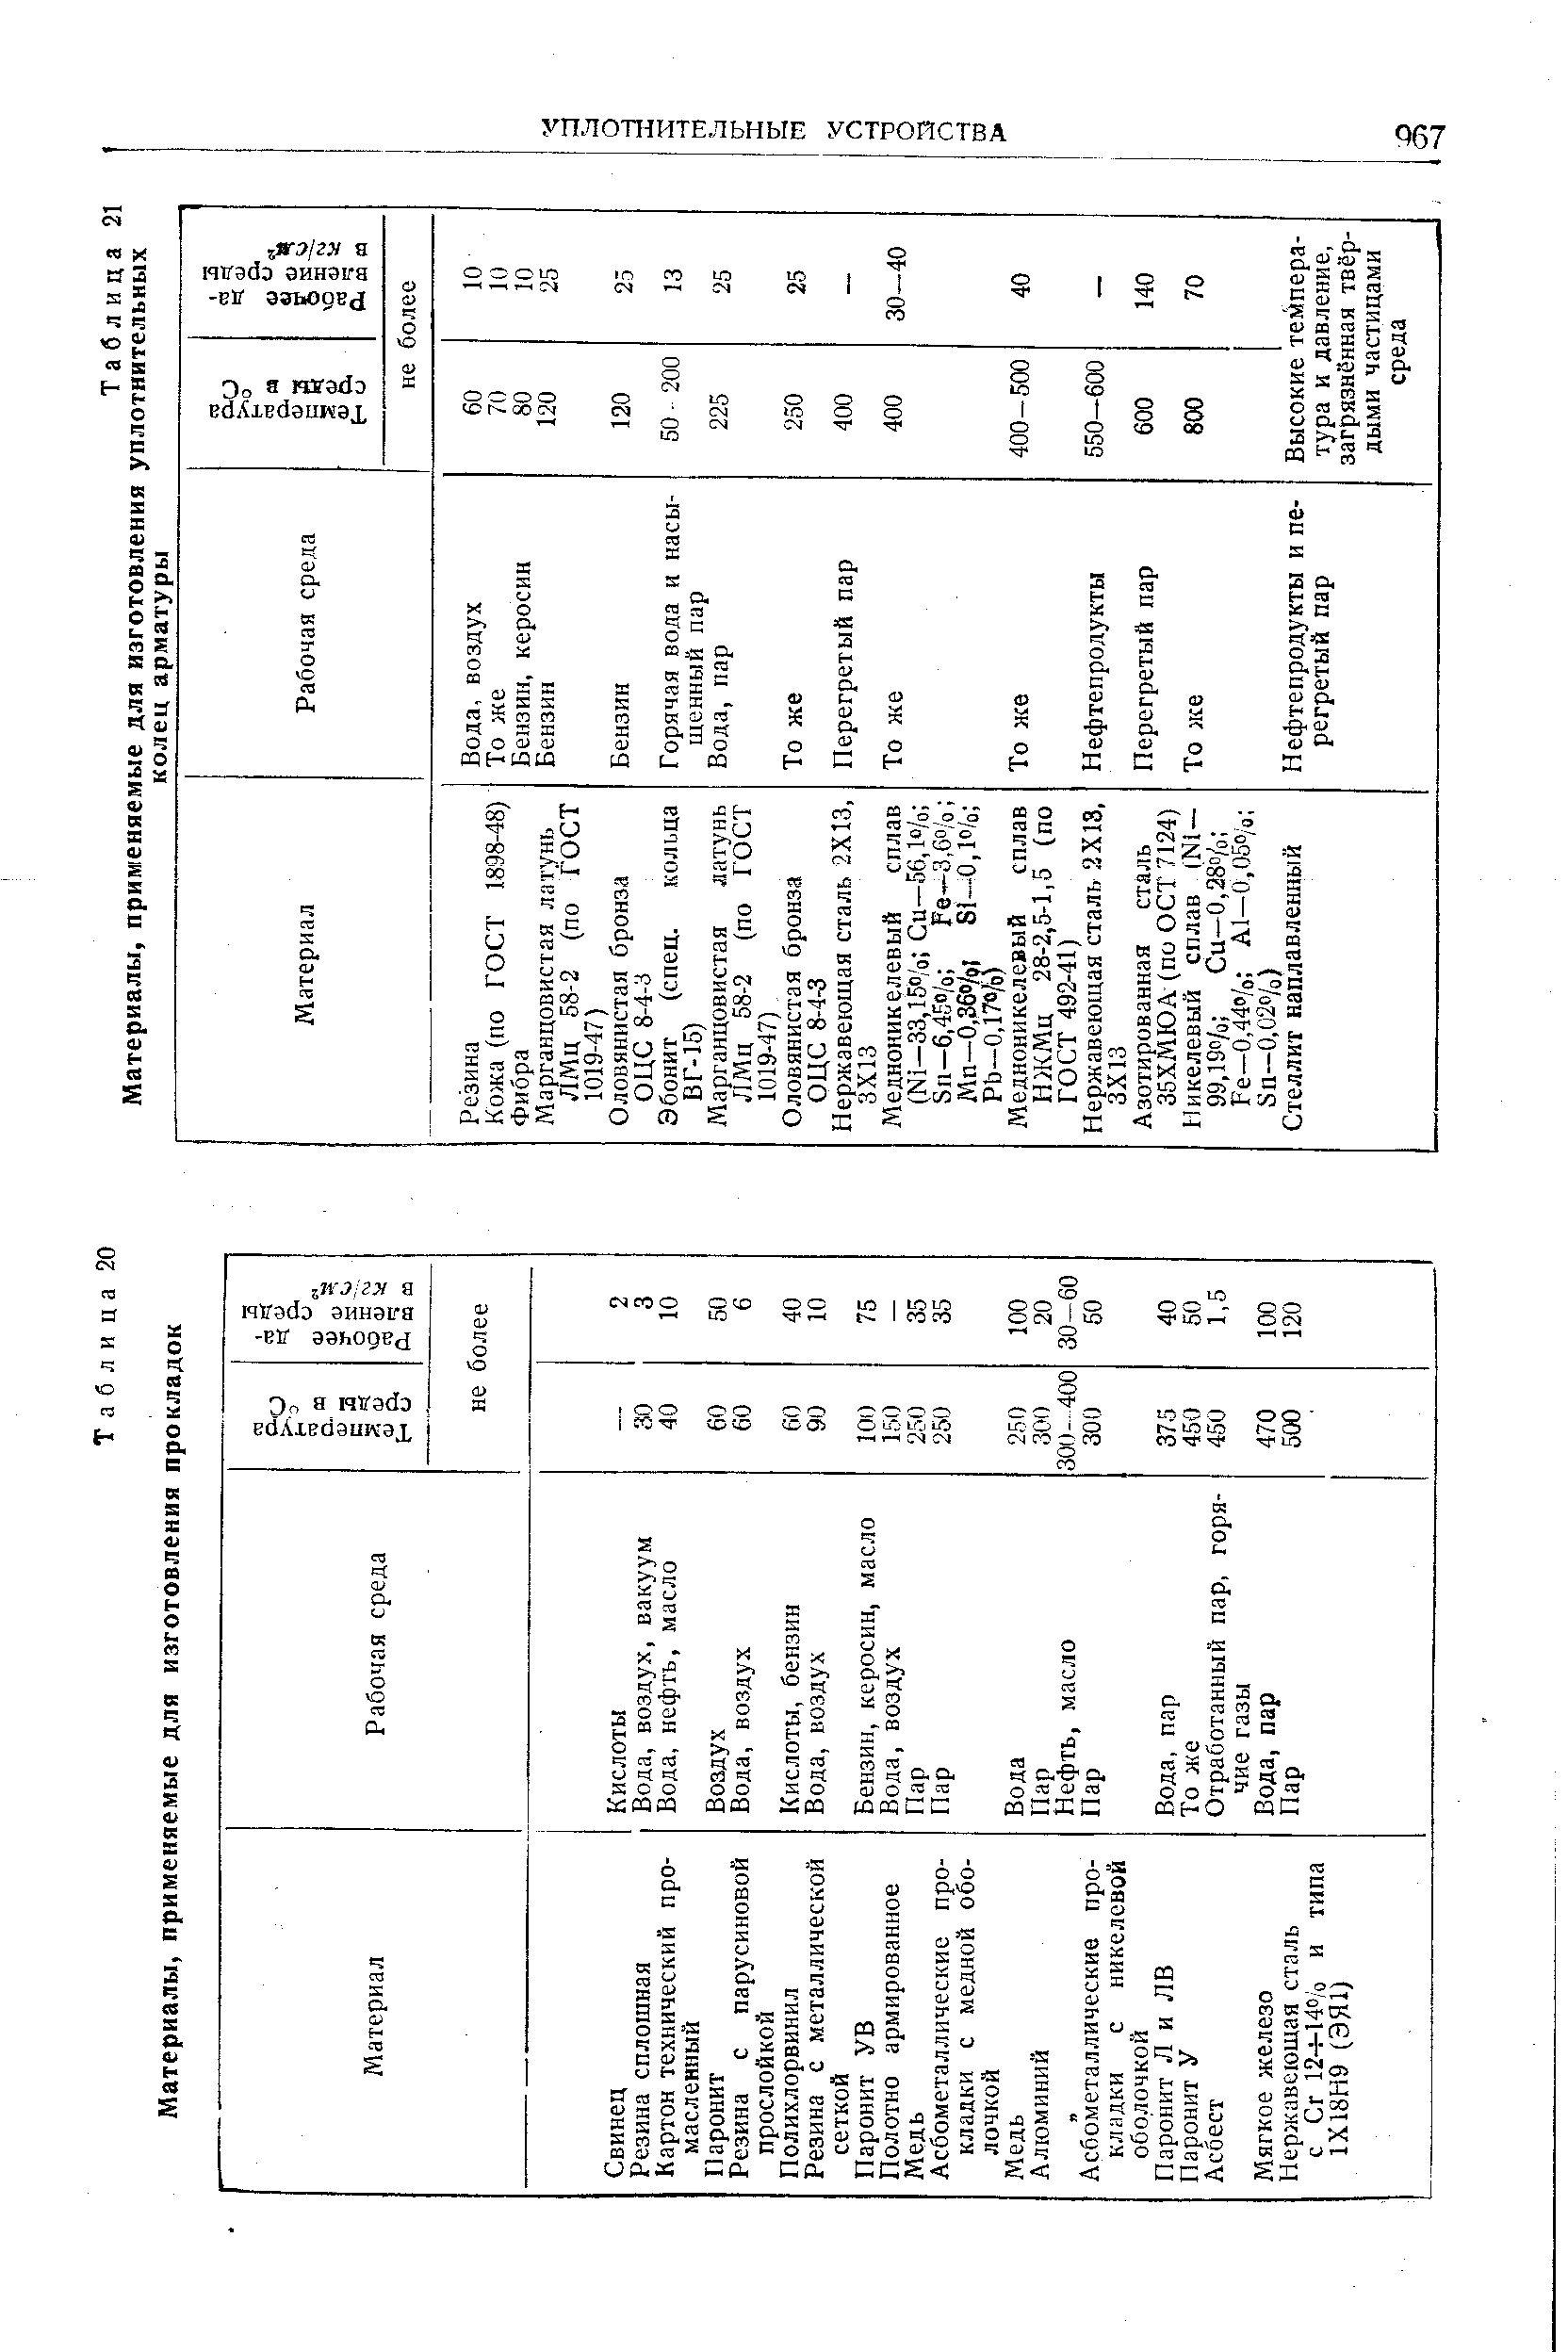 Таблица 20 Материалы, применяемые для изготовления прокладок
